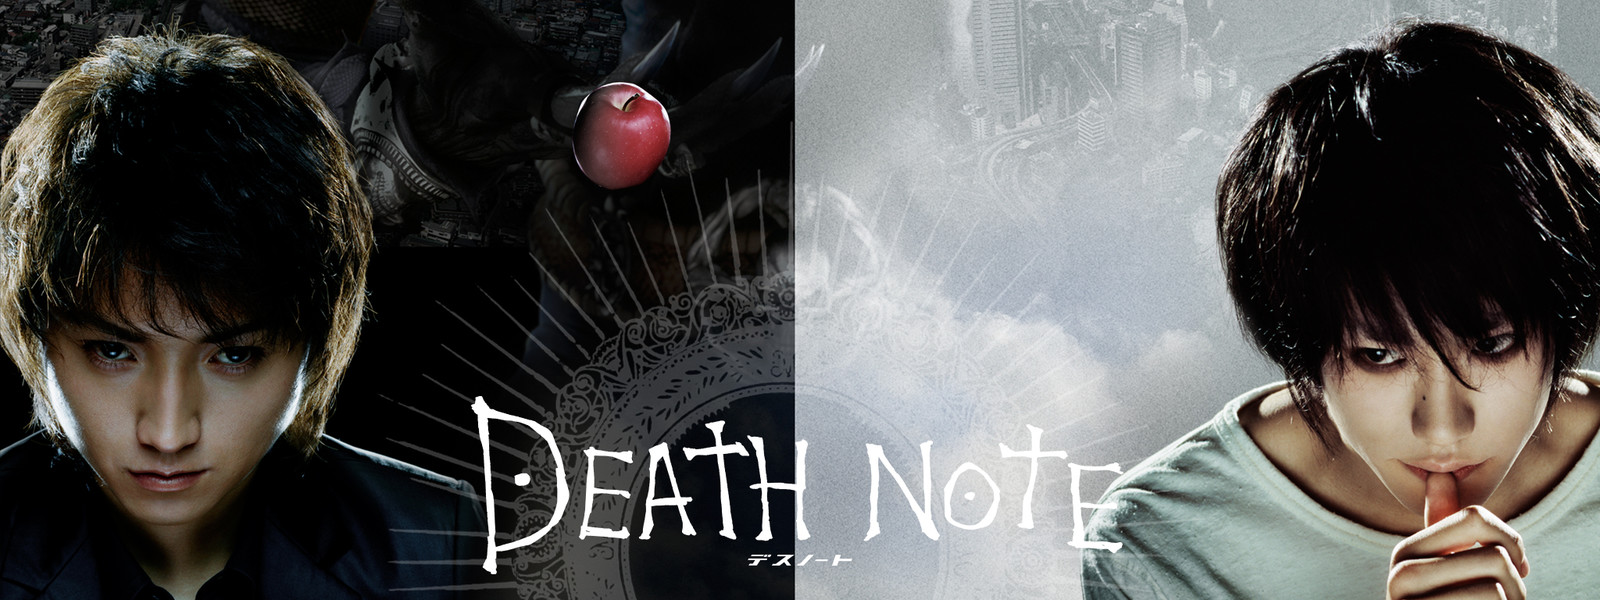 Death Note デスノート Movie の主題歌とは 歌っているアーティスは誰 サントラはあるの Vodzoo